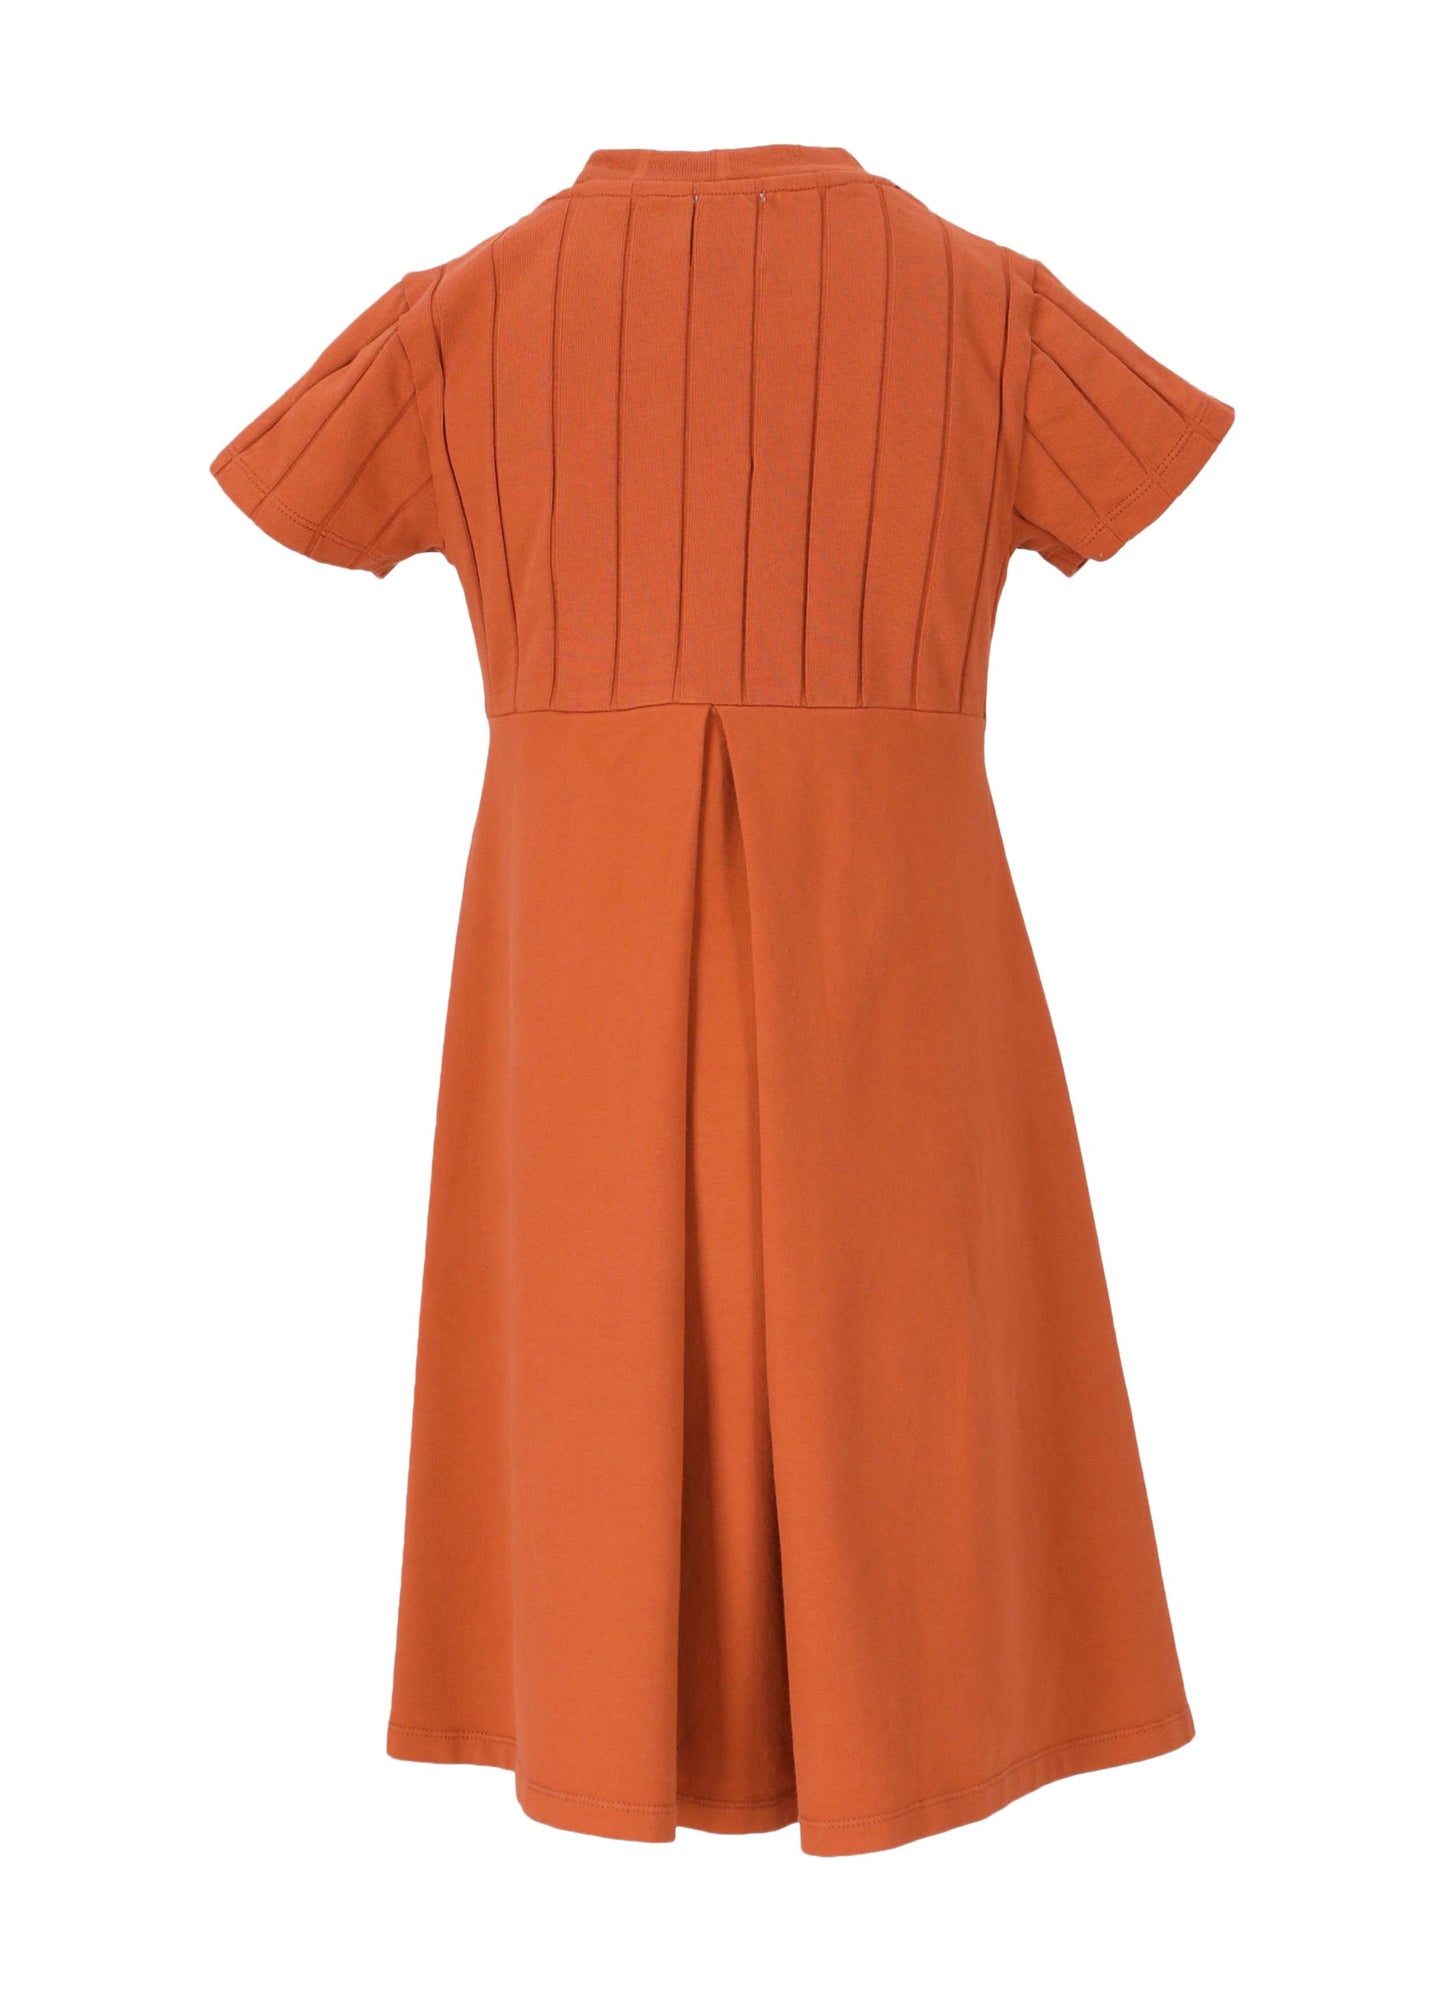 LMN3 Burnt Orange Ribbed A Line Dress [Final Sale]